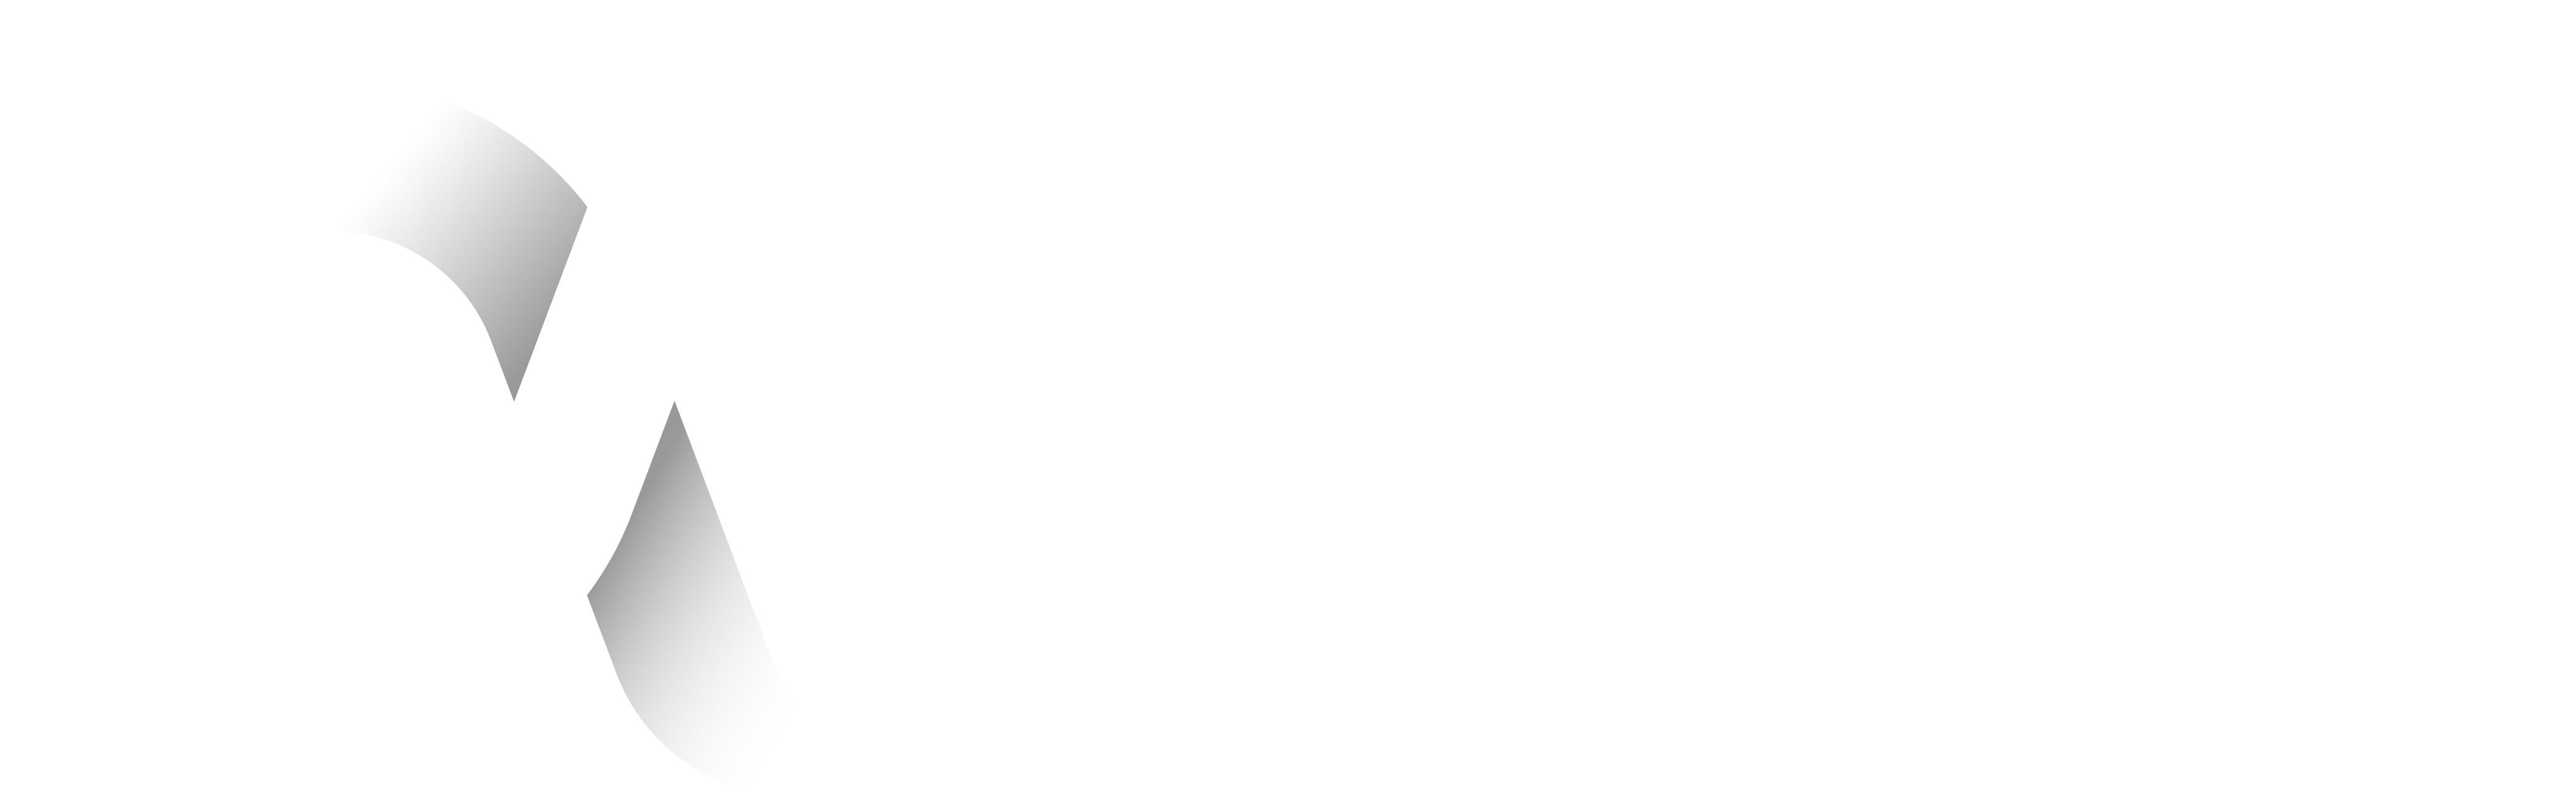 Alpha Media